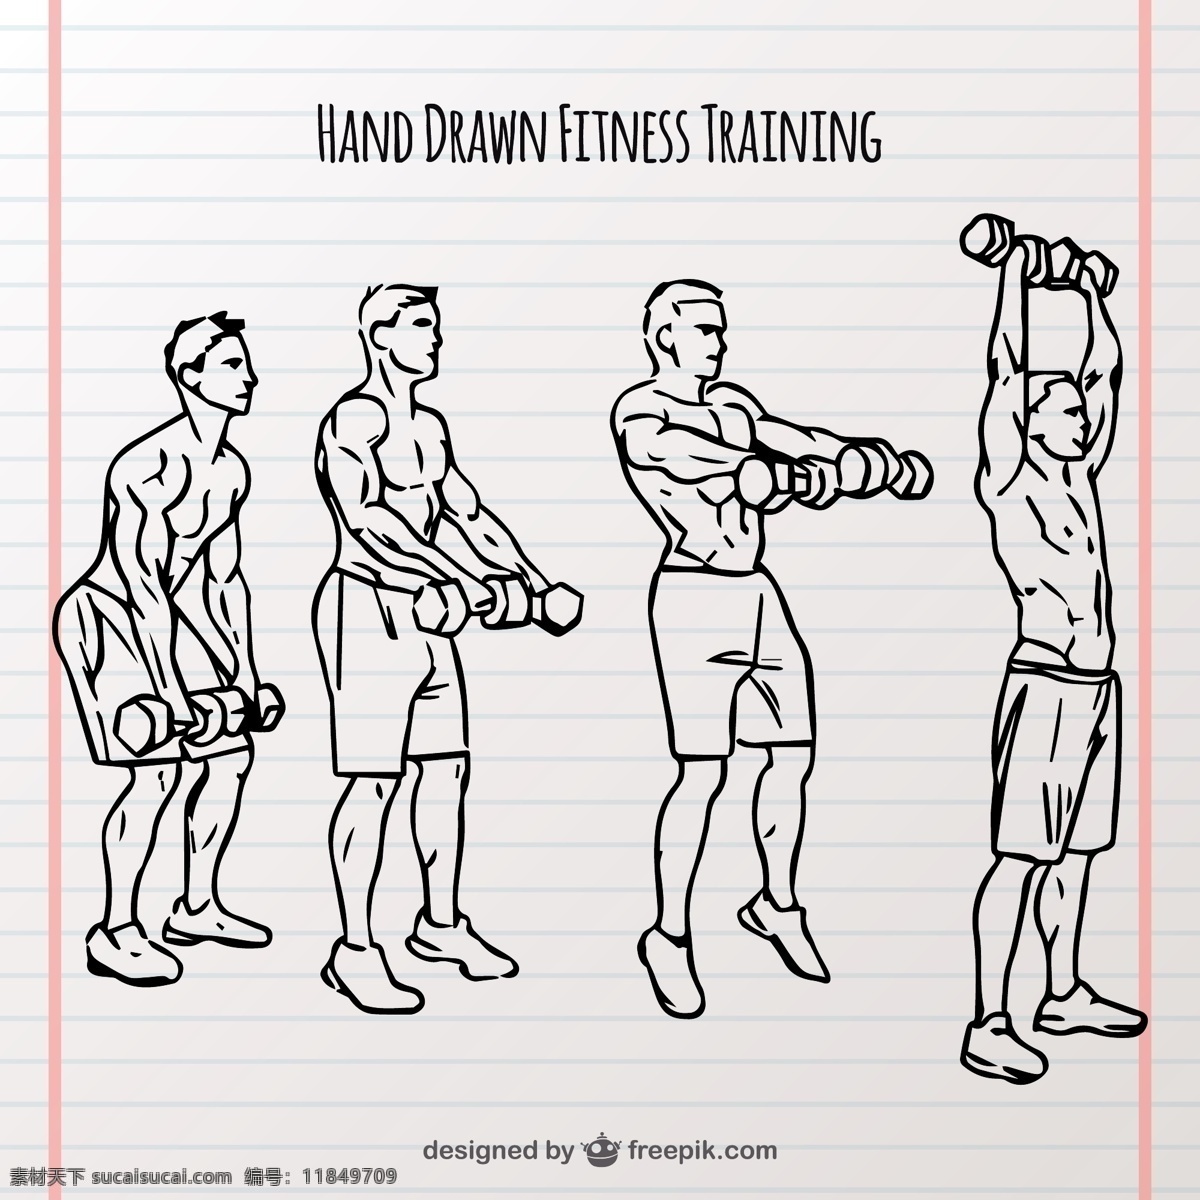 重量 训练 素描 一方面 运动 健身 健康 手绘 体育 体重 生活方式 锻炼 画草图 粗略的